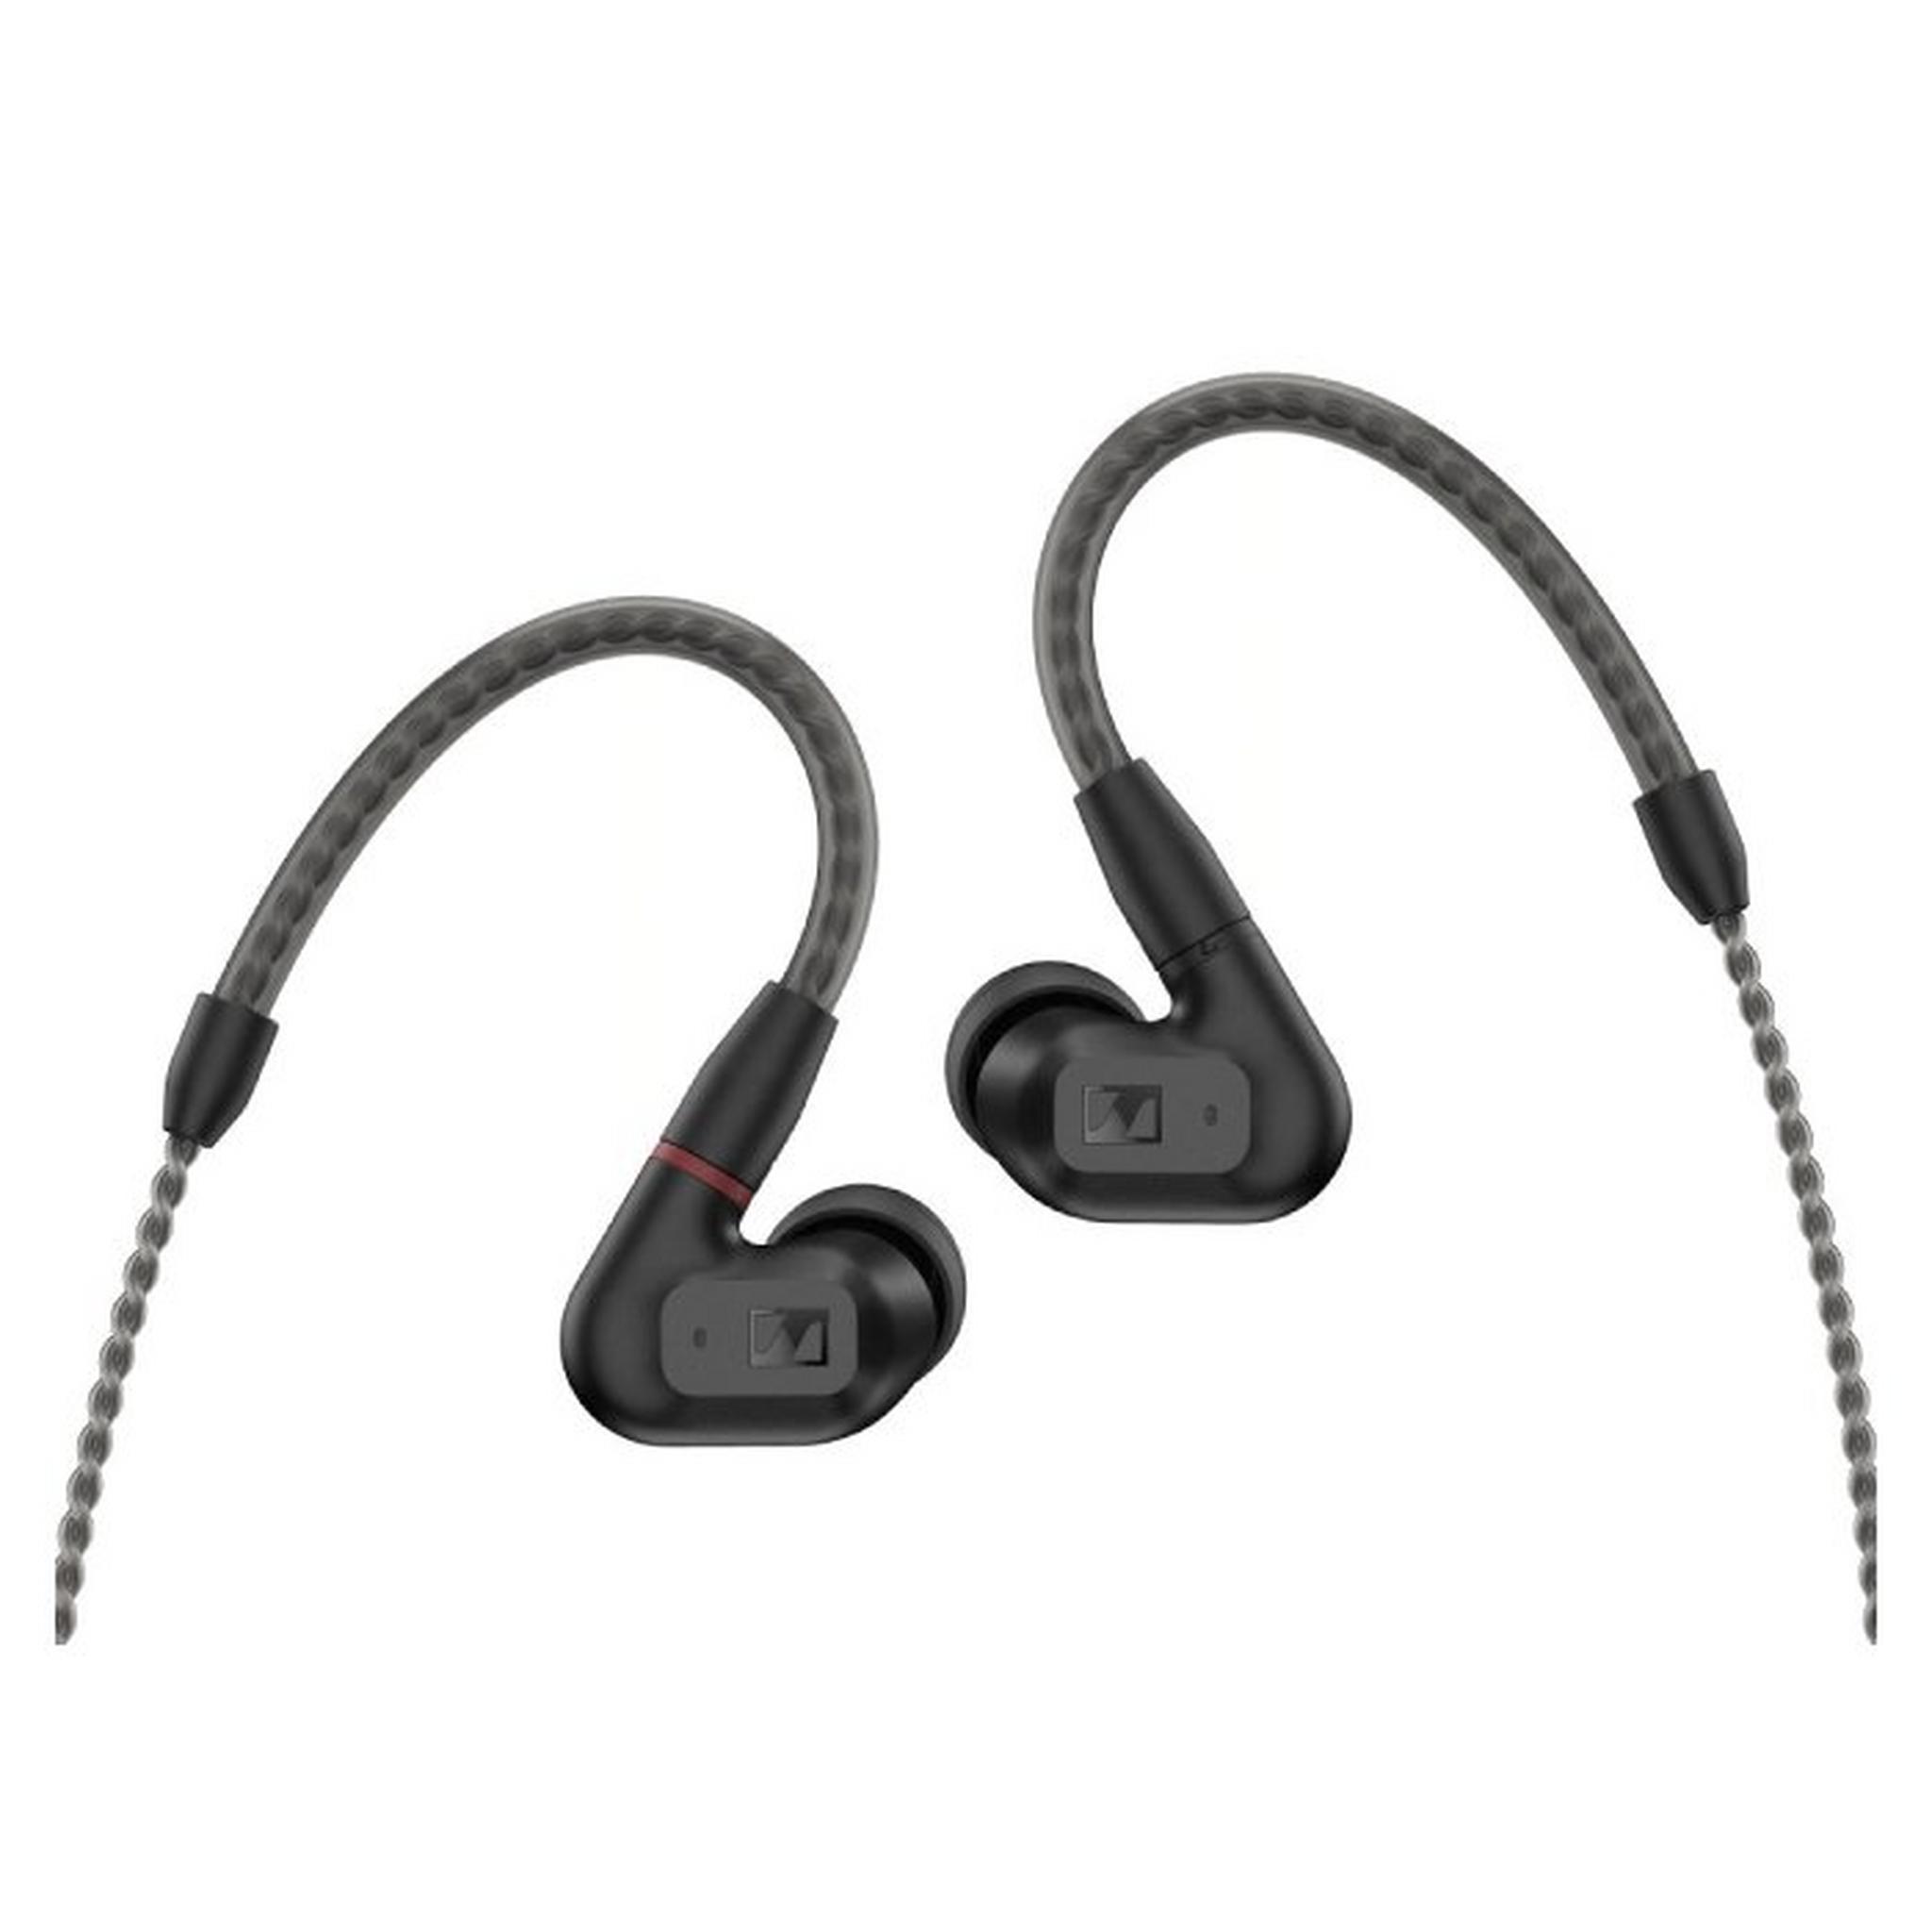 Sennheiser Wired In Ear Headphones, IE 200 - Black